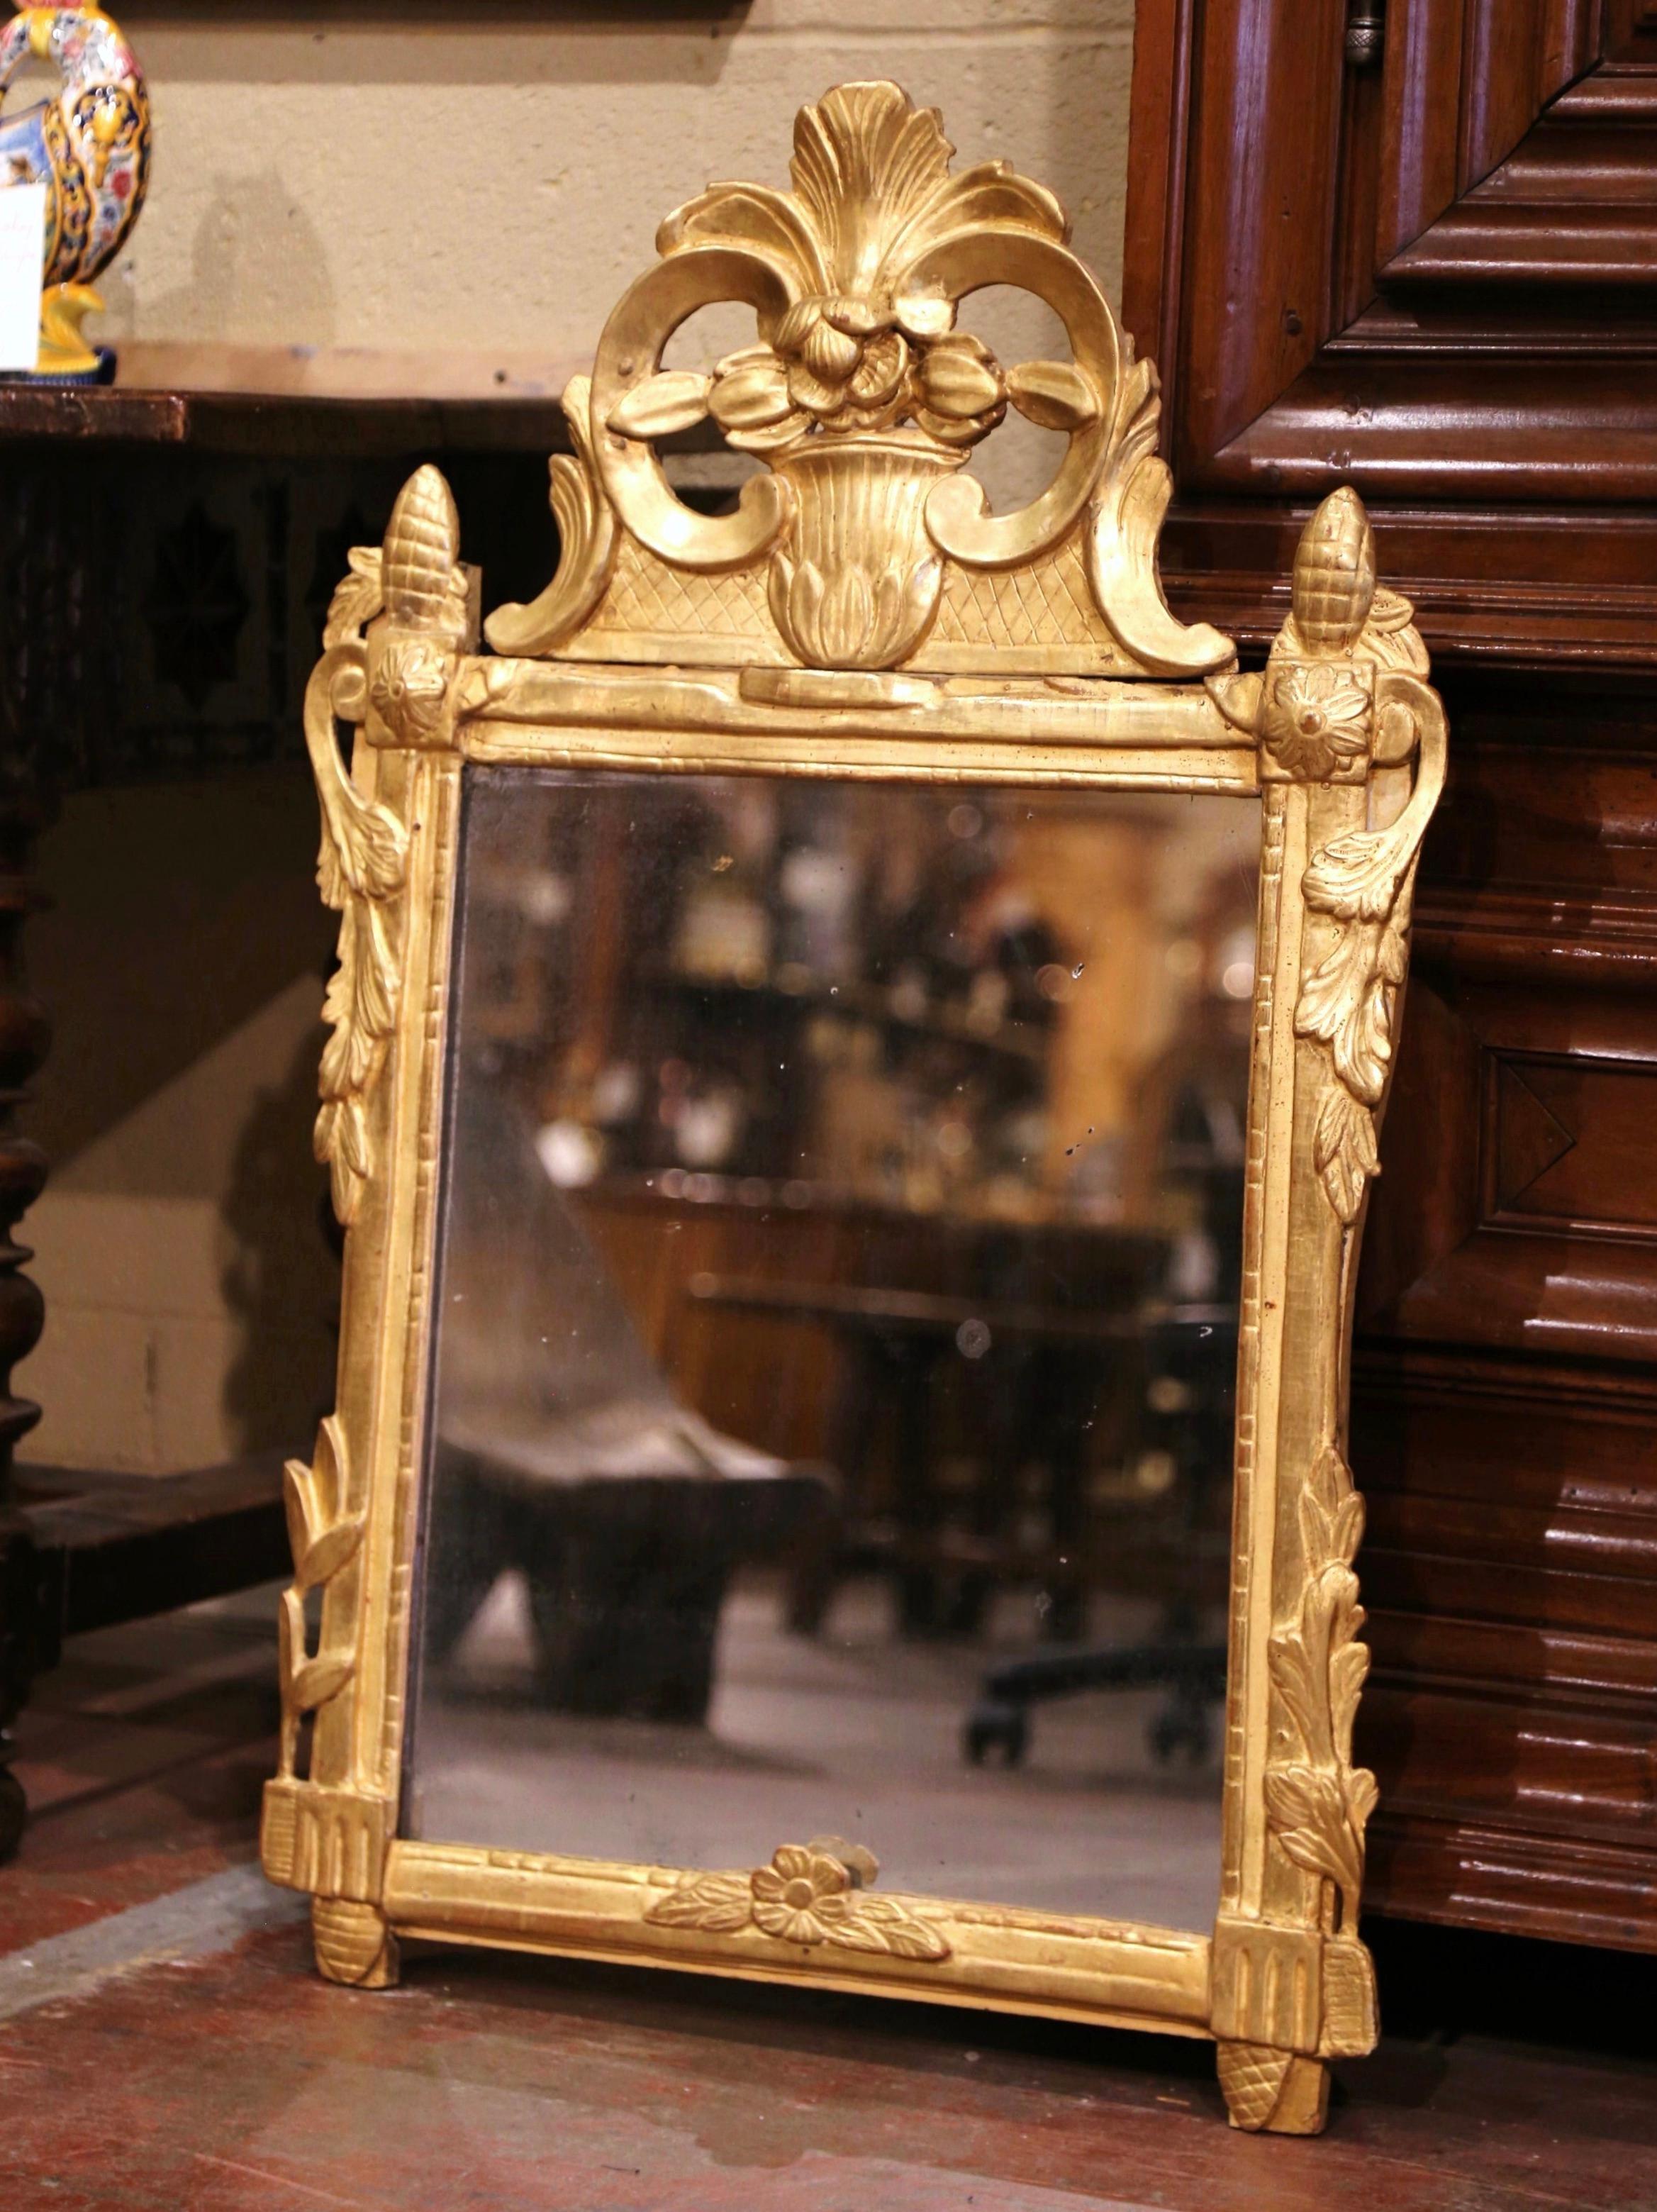 Dieser elegante, antike, vergoldete Spiegel ist eine charmante Ergänzung für den Eingangsbereich oder die Nasszelle. Der um 1780 in Südfrankreich gefertigte, rechteckige Provinzspiegel ist stark geschnitzt und zeigt die Designelemente des Rokoko und